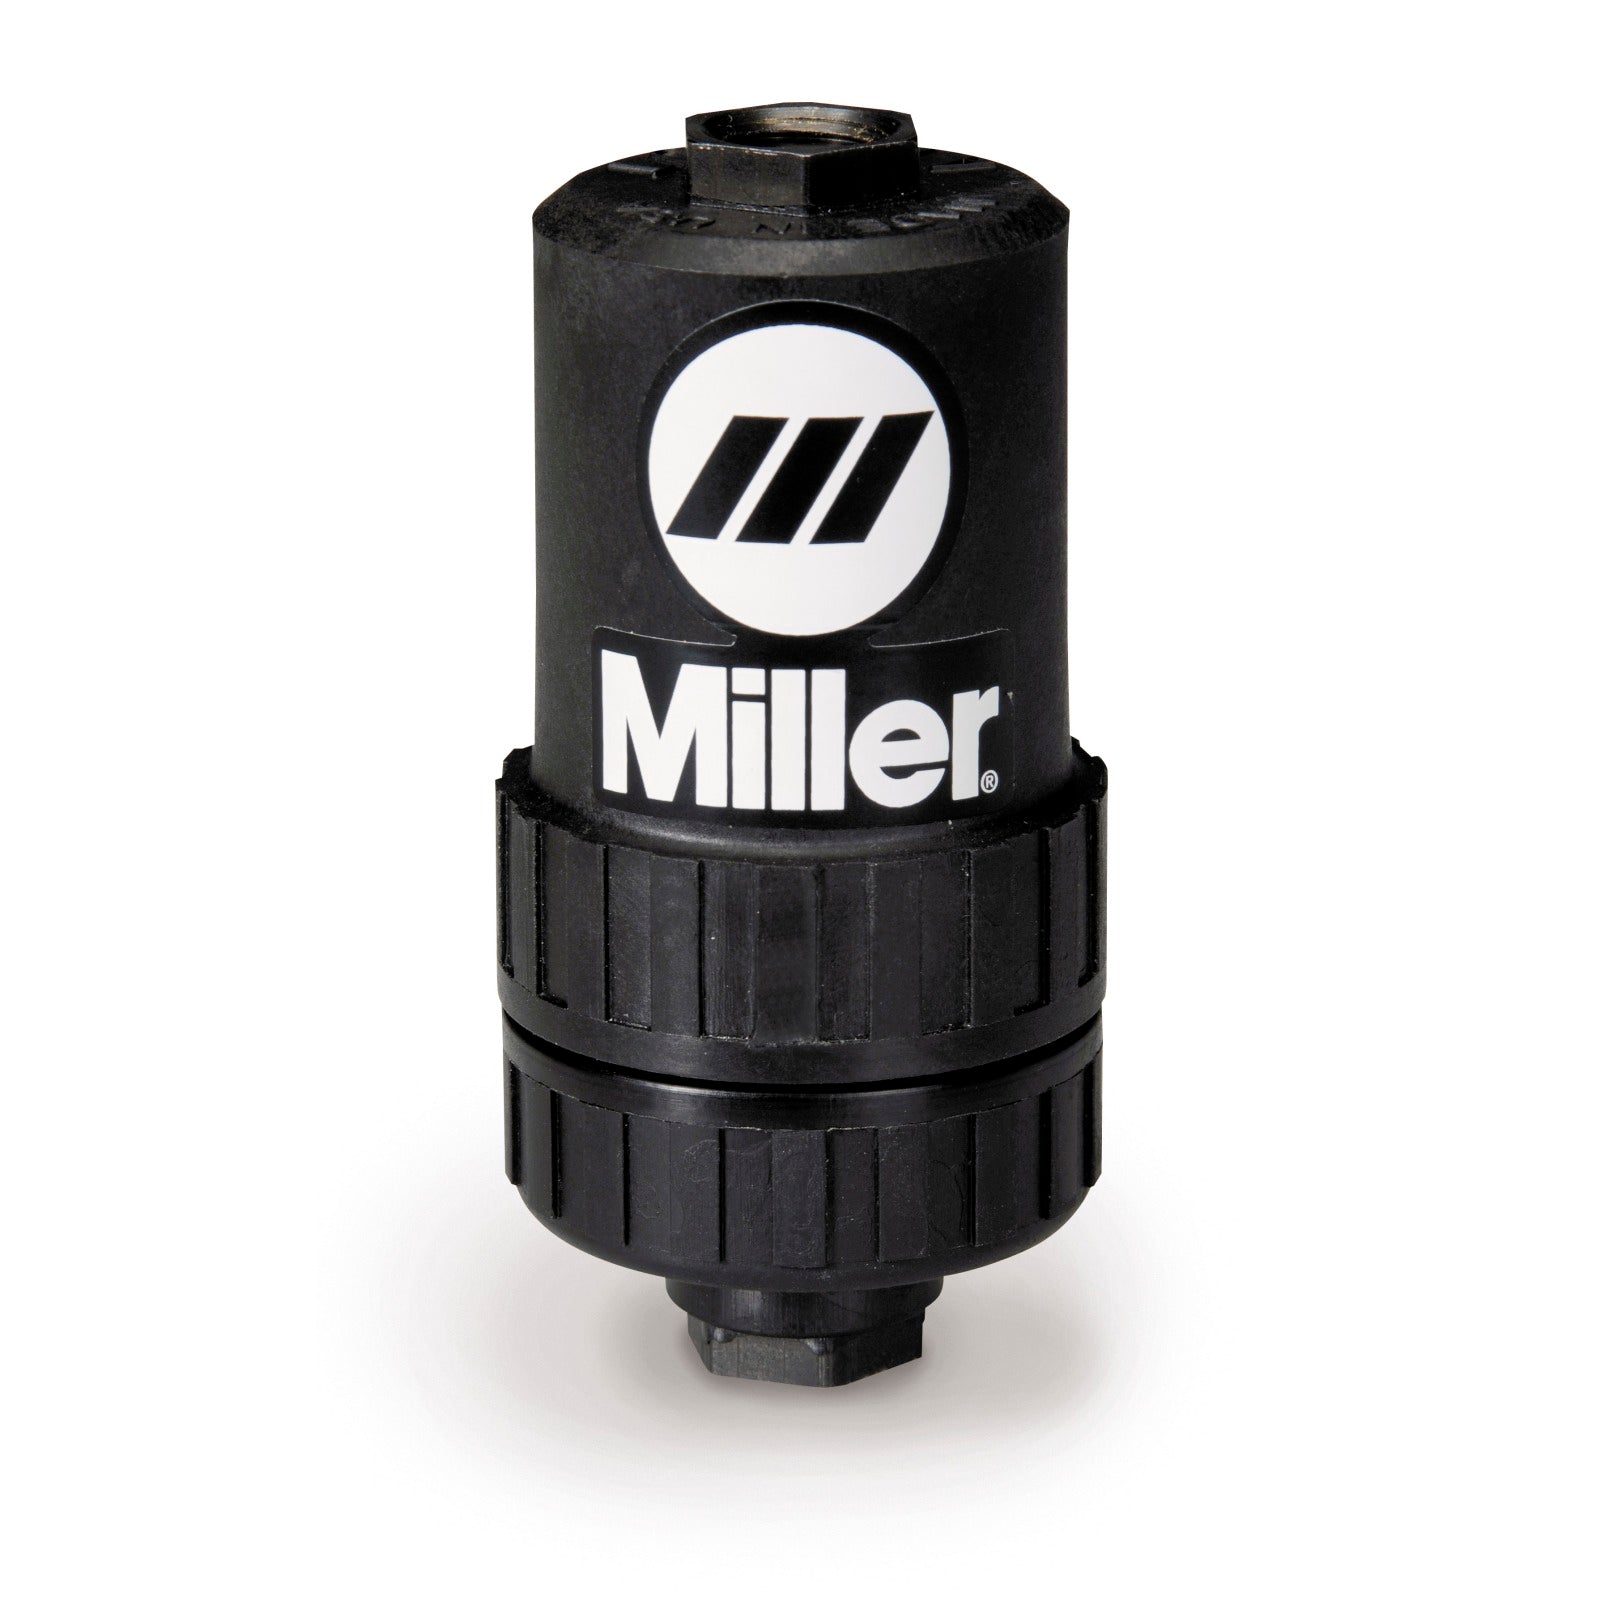 Miller Plasma Cutter Air Filter - Fits Most Brands (228926)